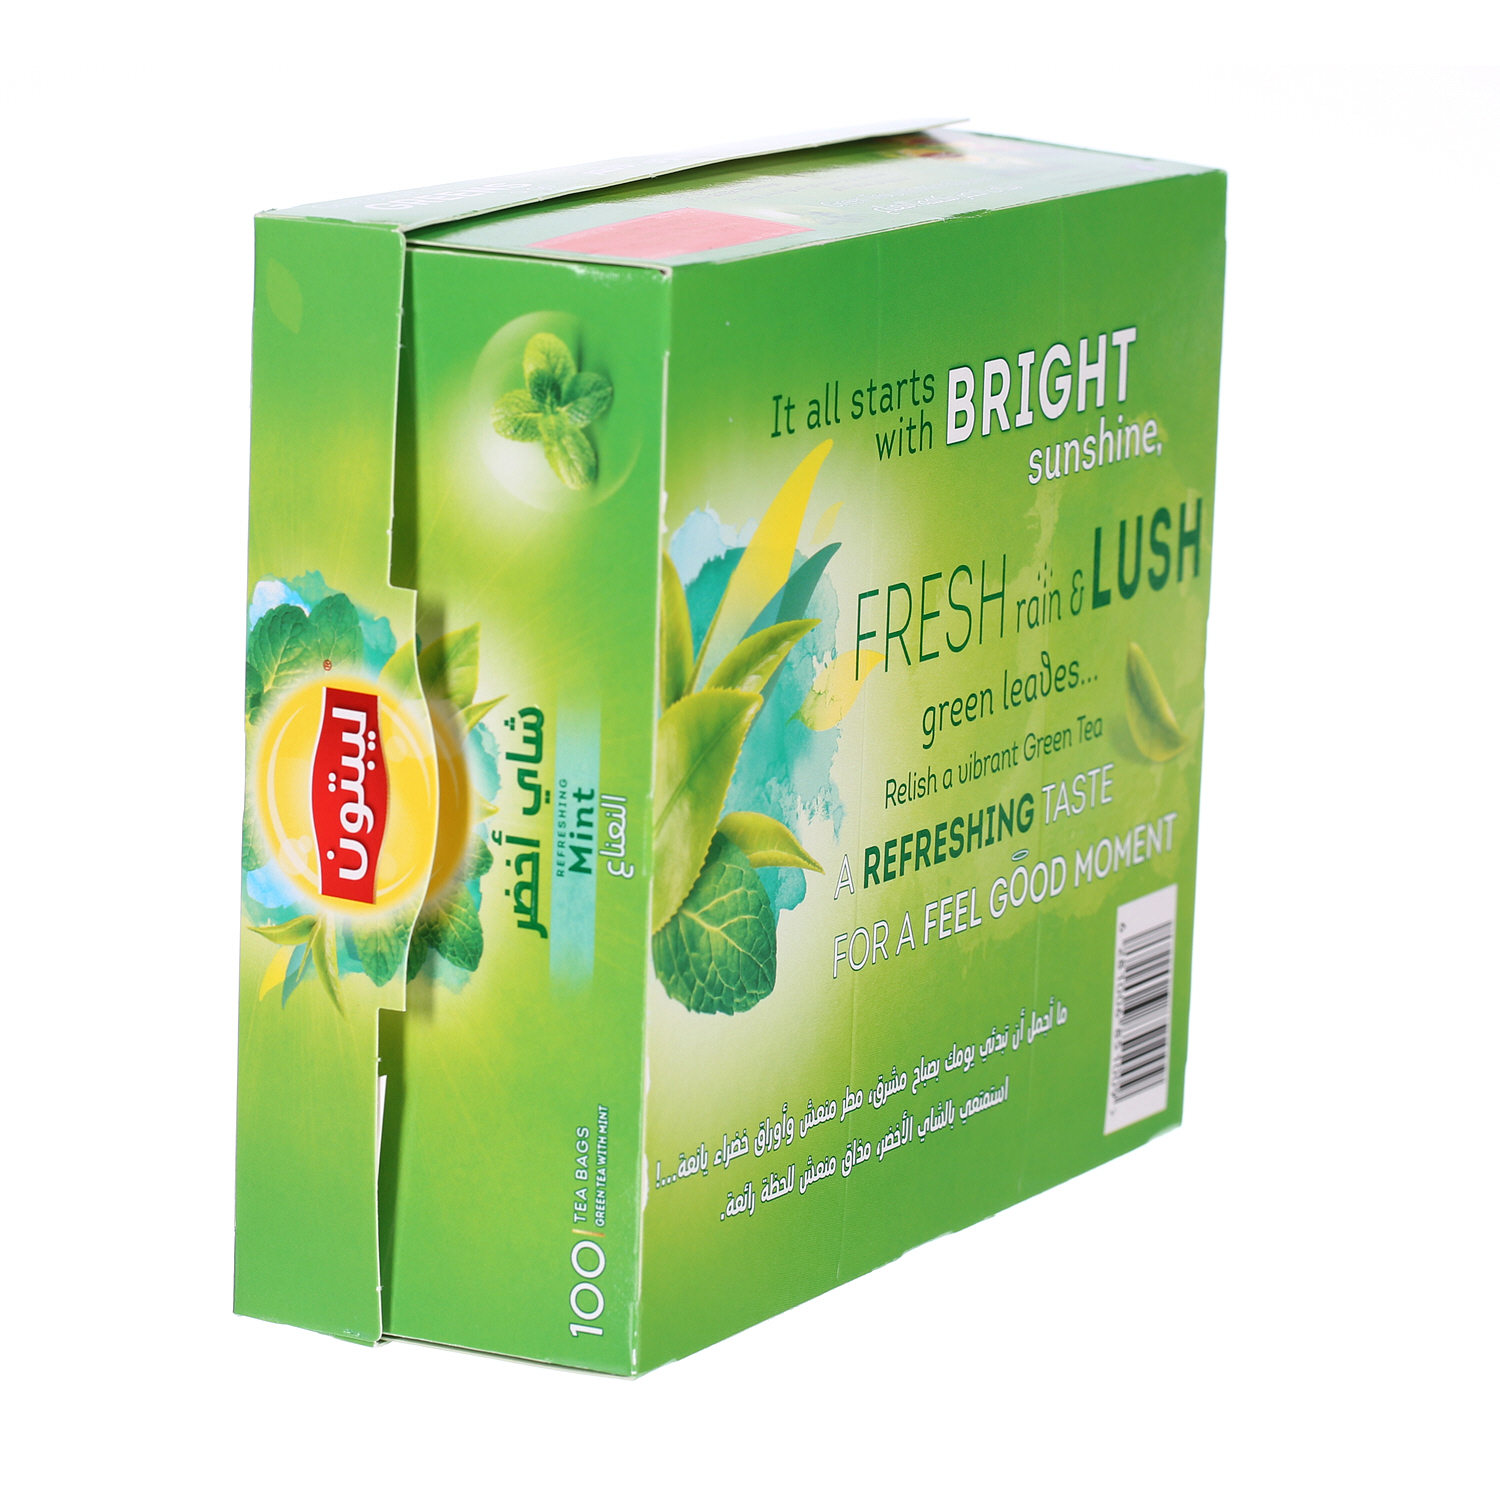 ليبتون شاي أخضر بالنعناع 100 × 1.5 جرام